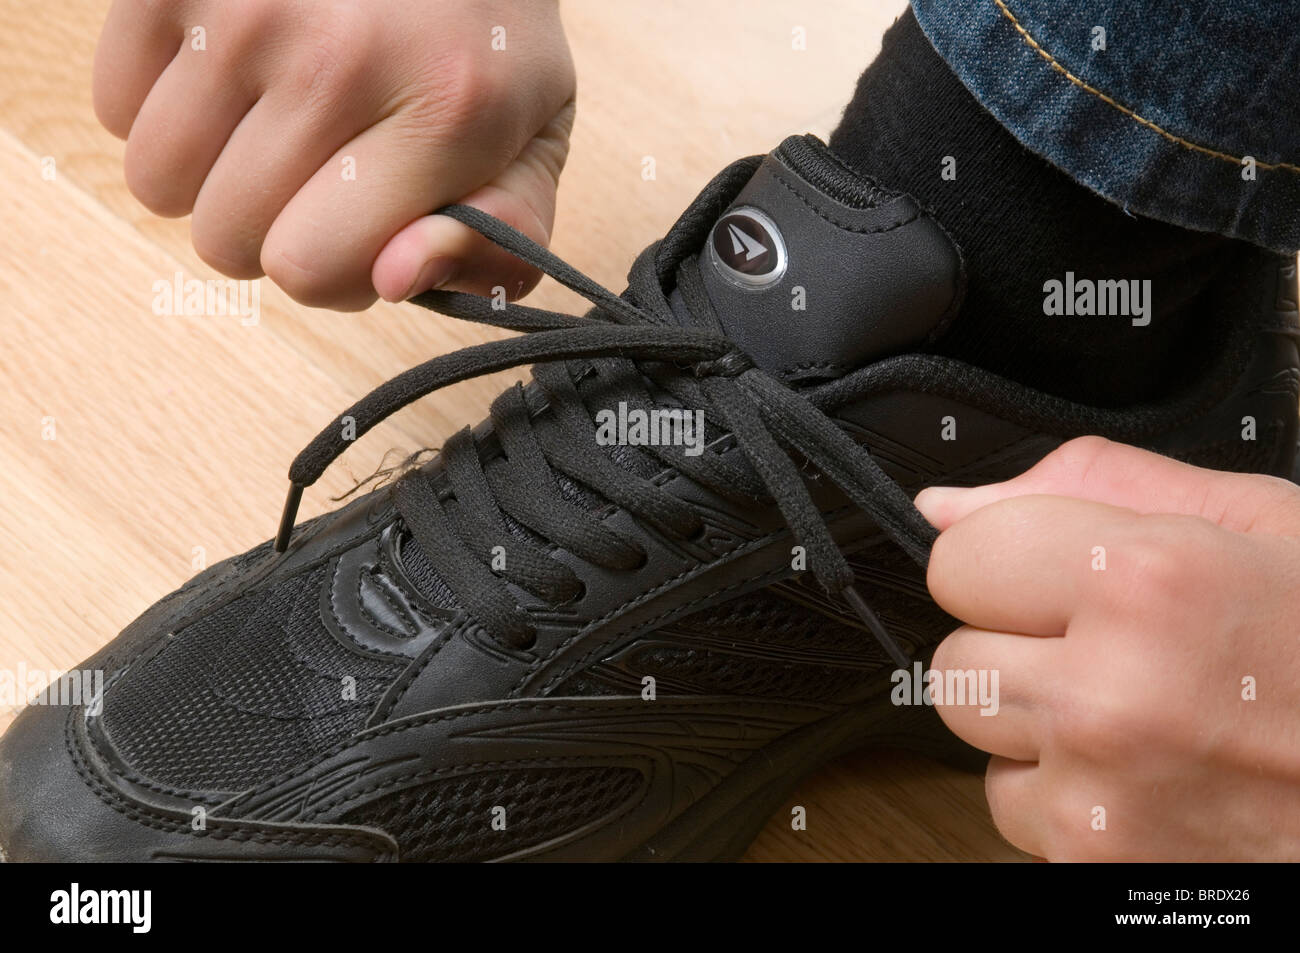 Chaussures lacets lacet lacet lacets de chaussures de formateurs de  formateurs de liage cravate pompes lié fait-main mains string serré serrer  Photo Stock - Alamy